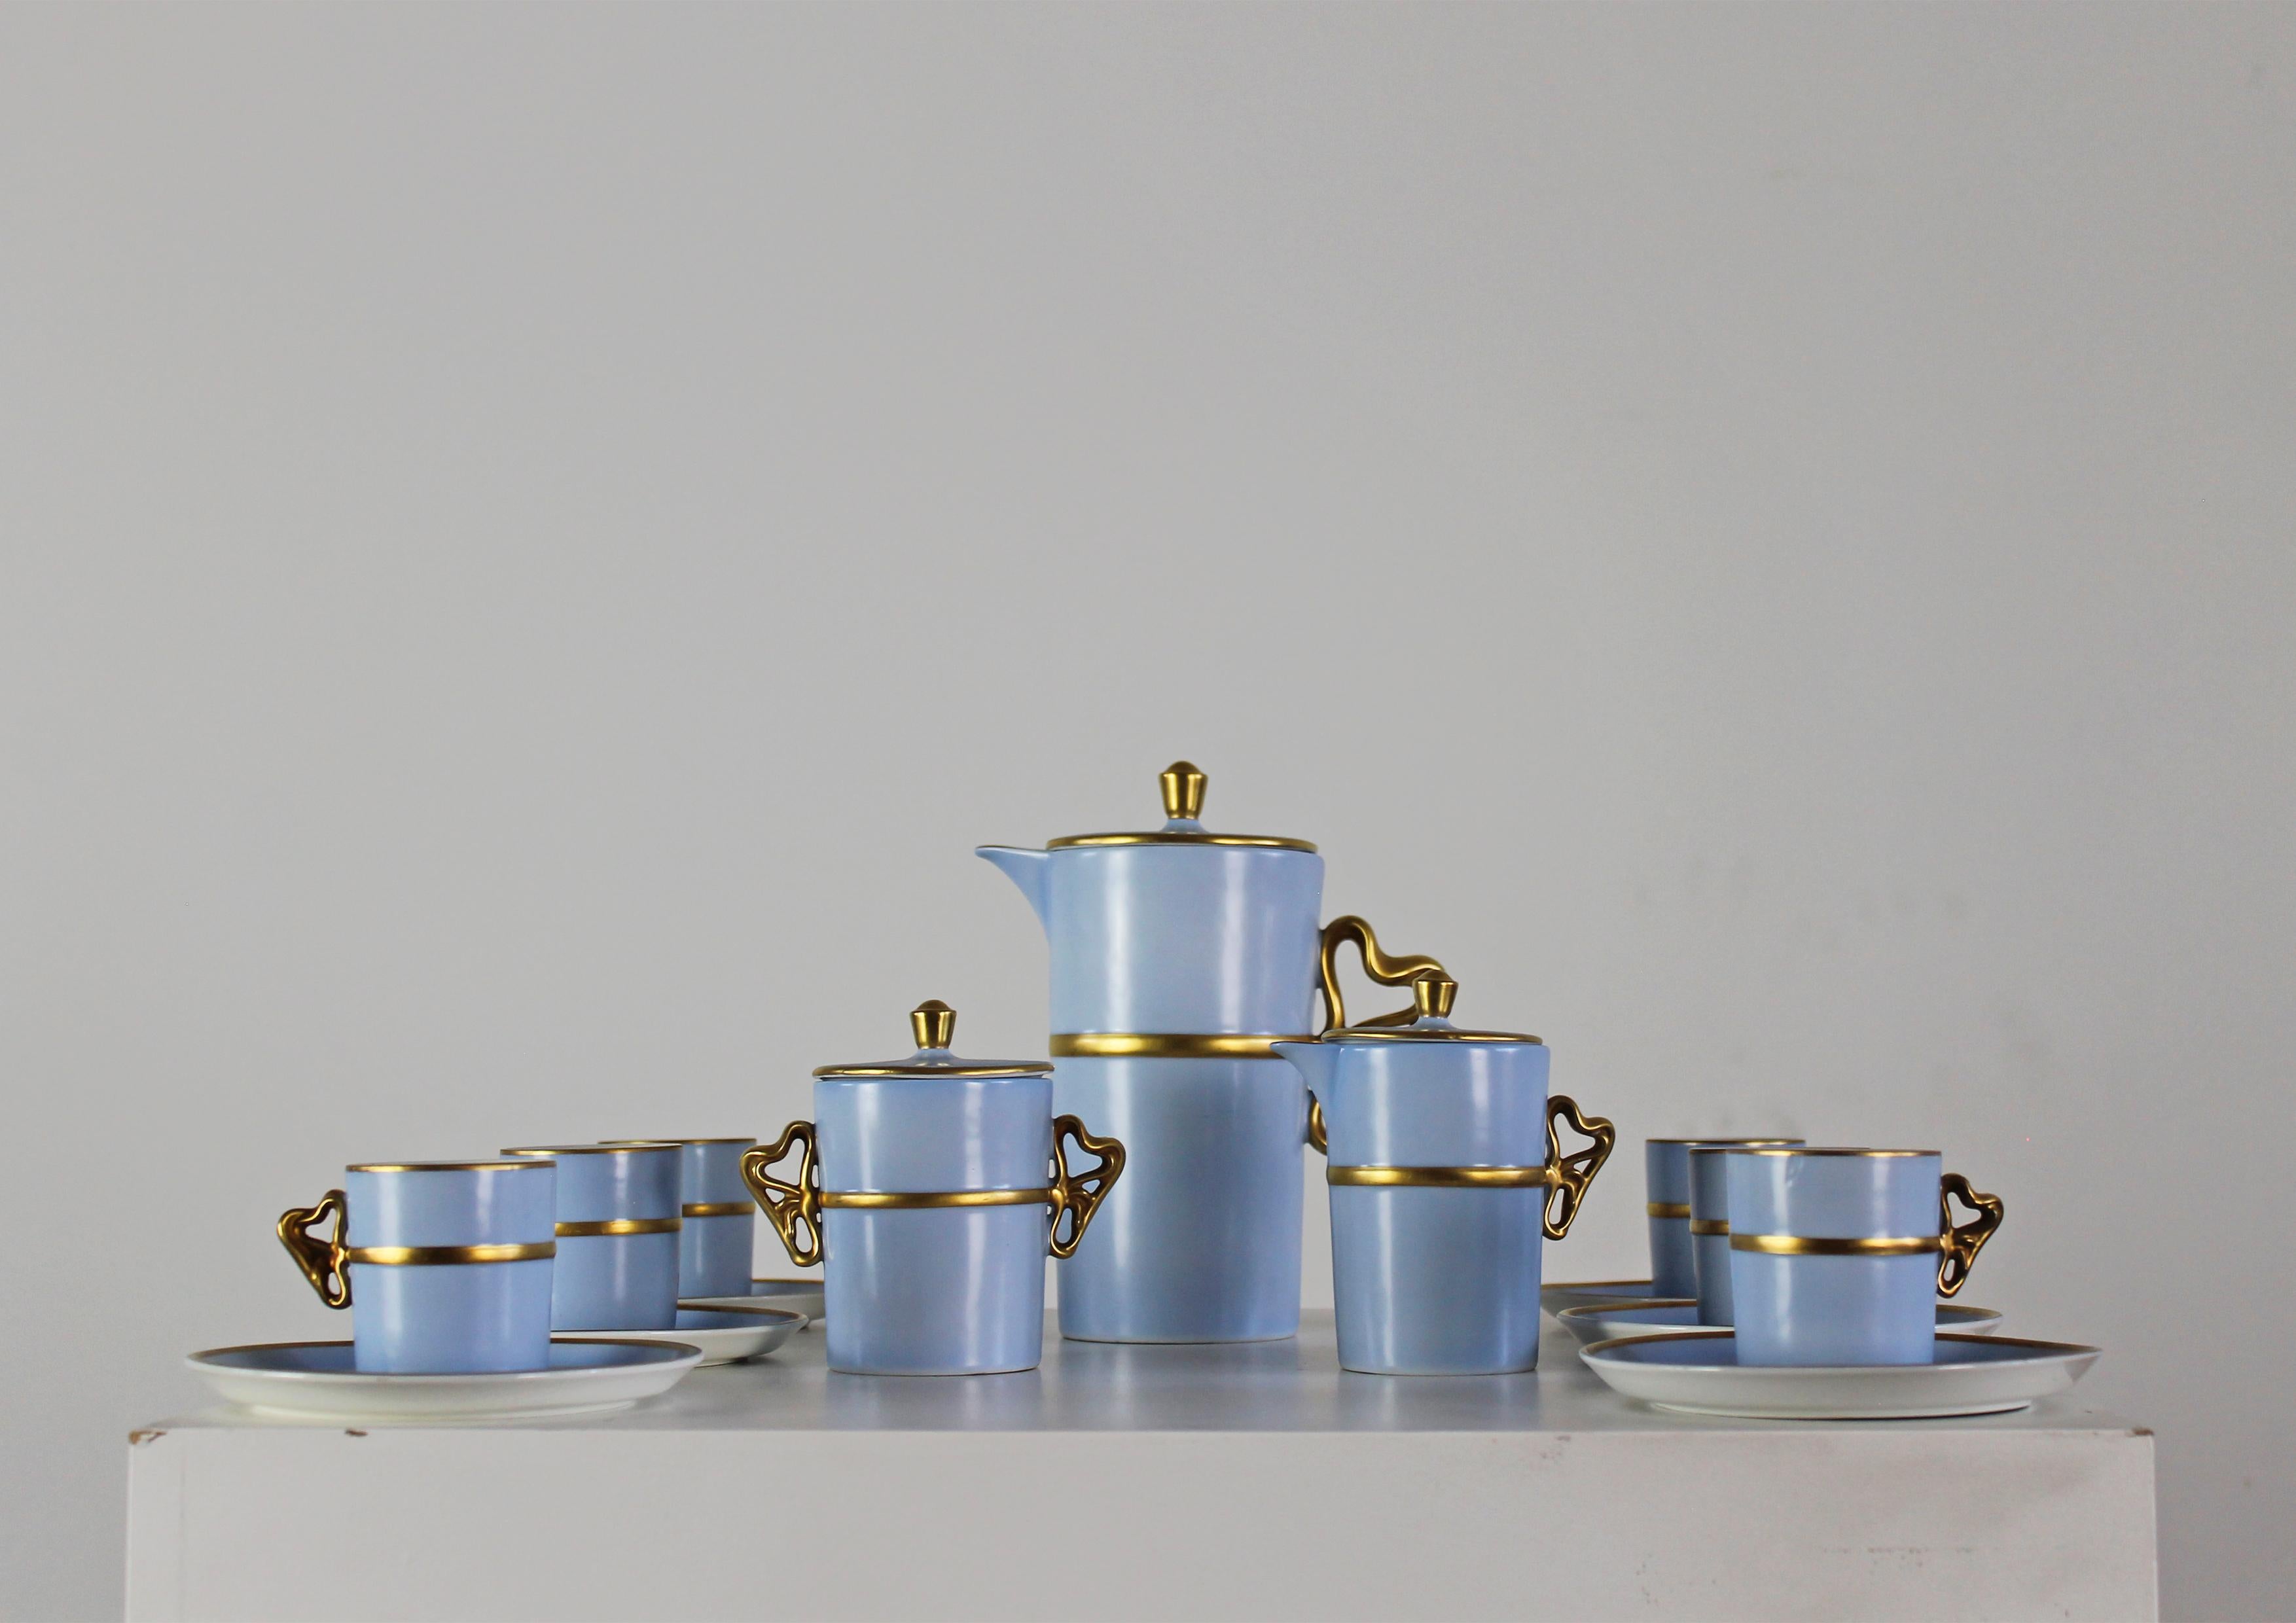 Rare service à thé pour six personnes en céramique d'un bleu clair très élégant avec une décoration raffinée en or pur. Il a été conçu par Antonia Campi et fabriqué par Laveno Ceramica à Verbano au début des années 1950. 

Cet ensemble est composé